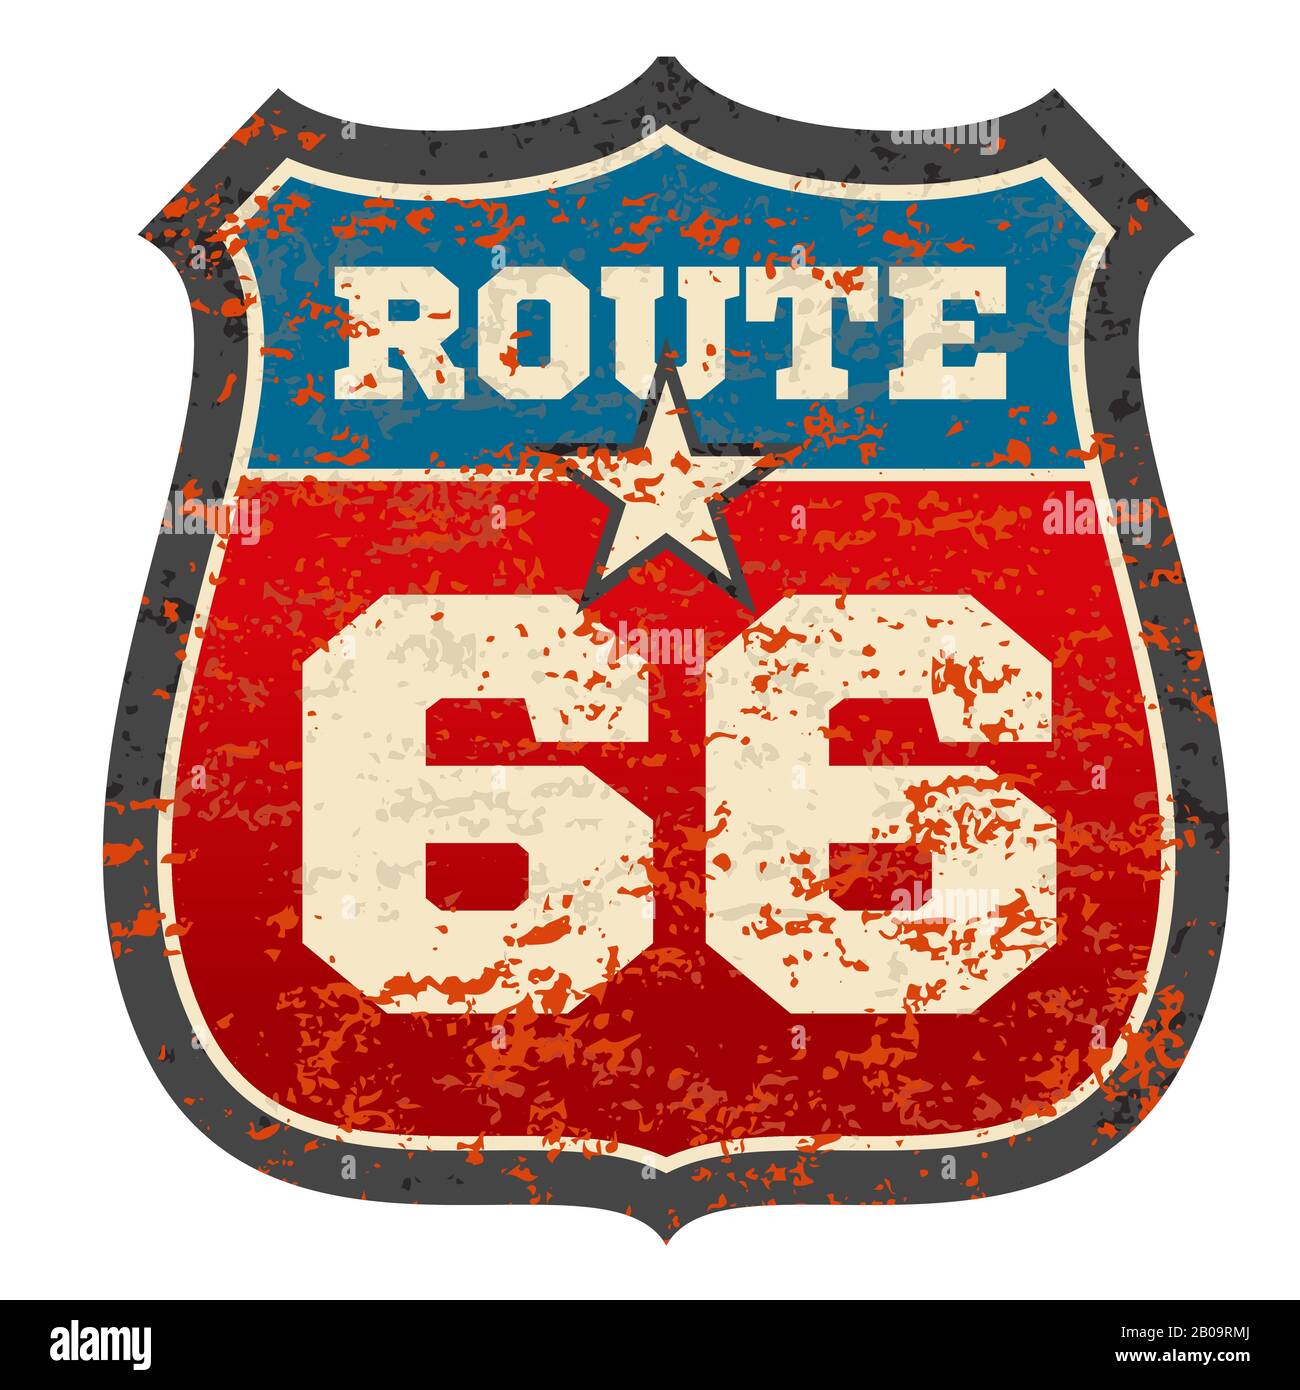 Cartello stradale Vintage Route 66 con grunge in grugge rusted texture vector illustrazione. Segnaletica stradale Route 66, segnaletica stradale di viaggio Illustrazione Vettoriale